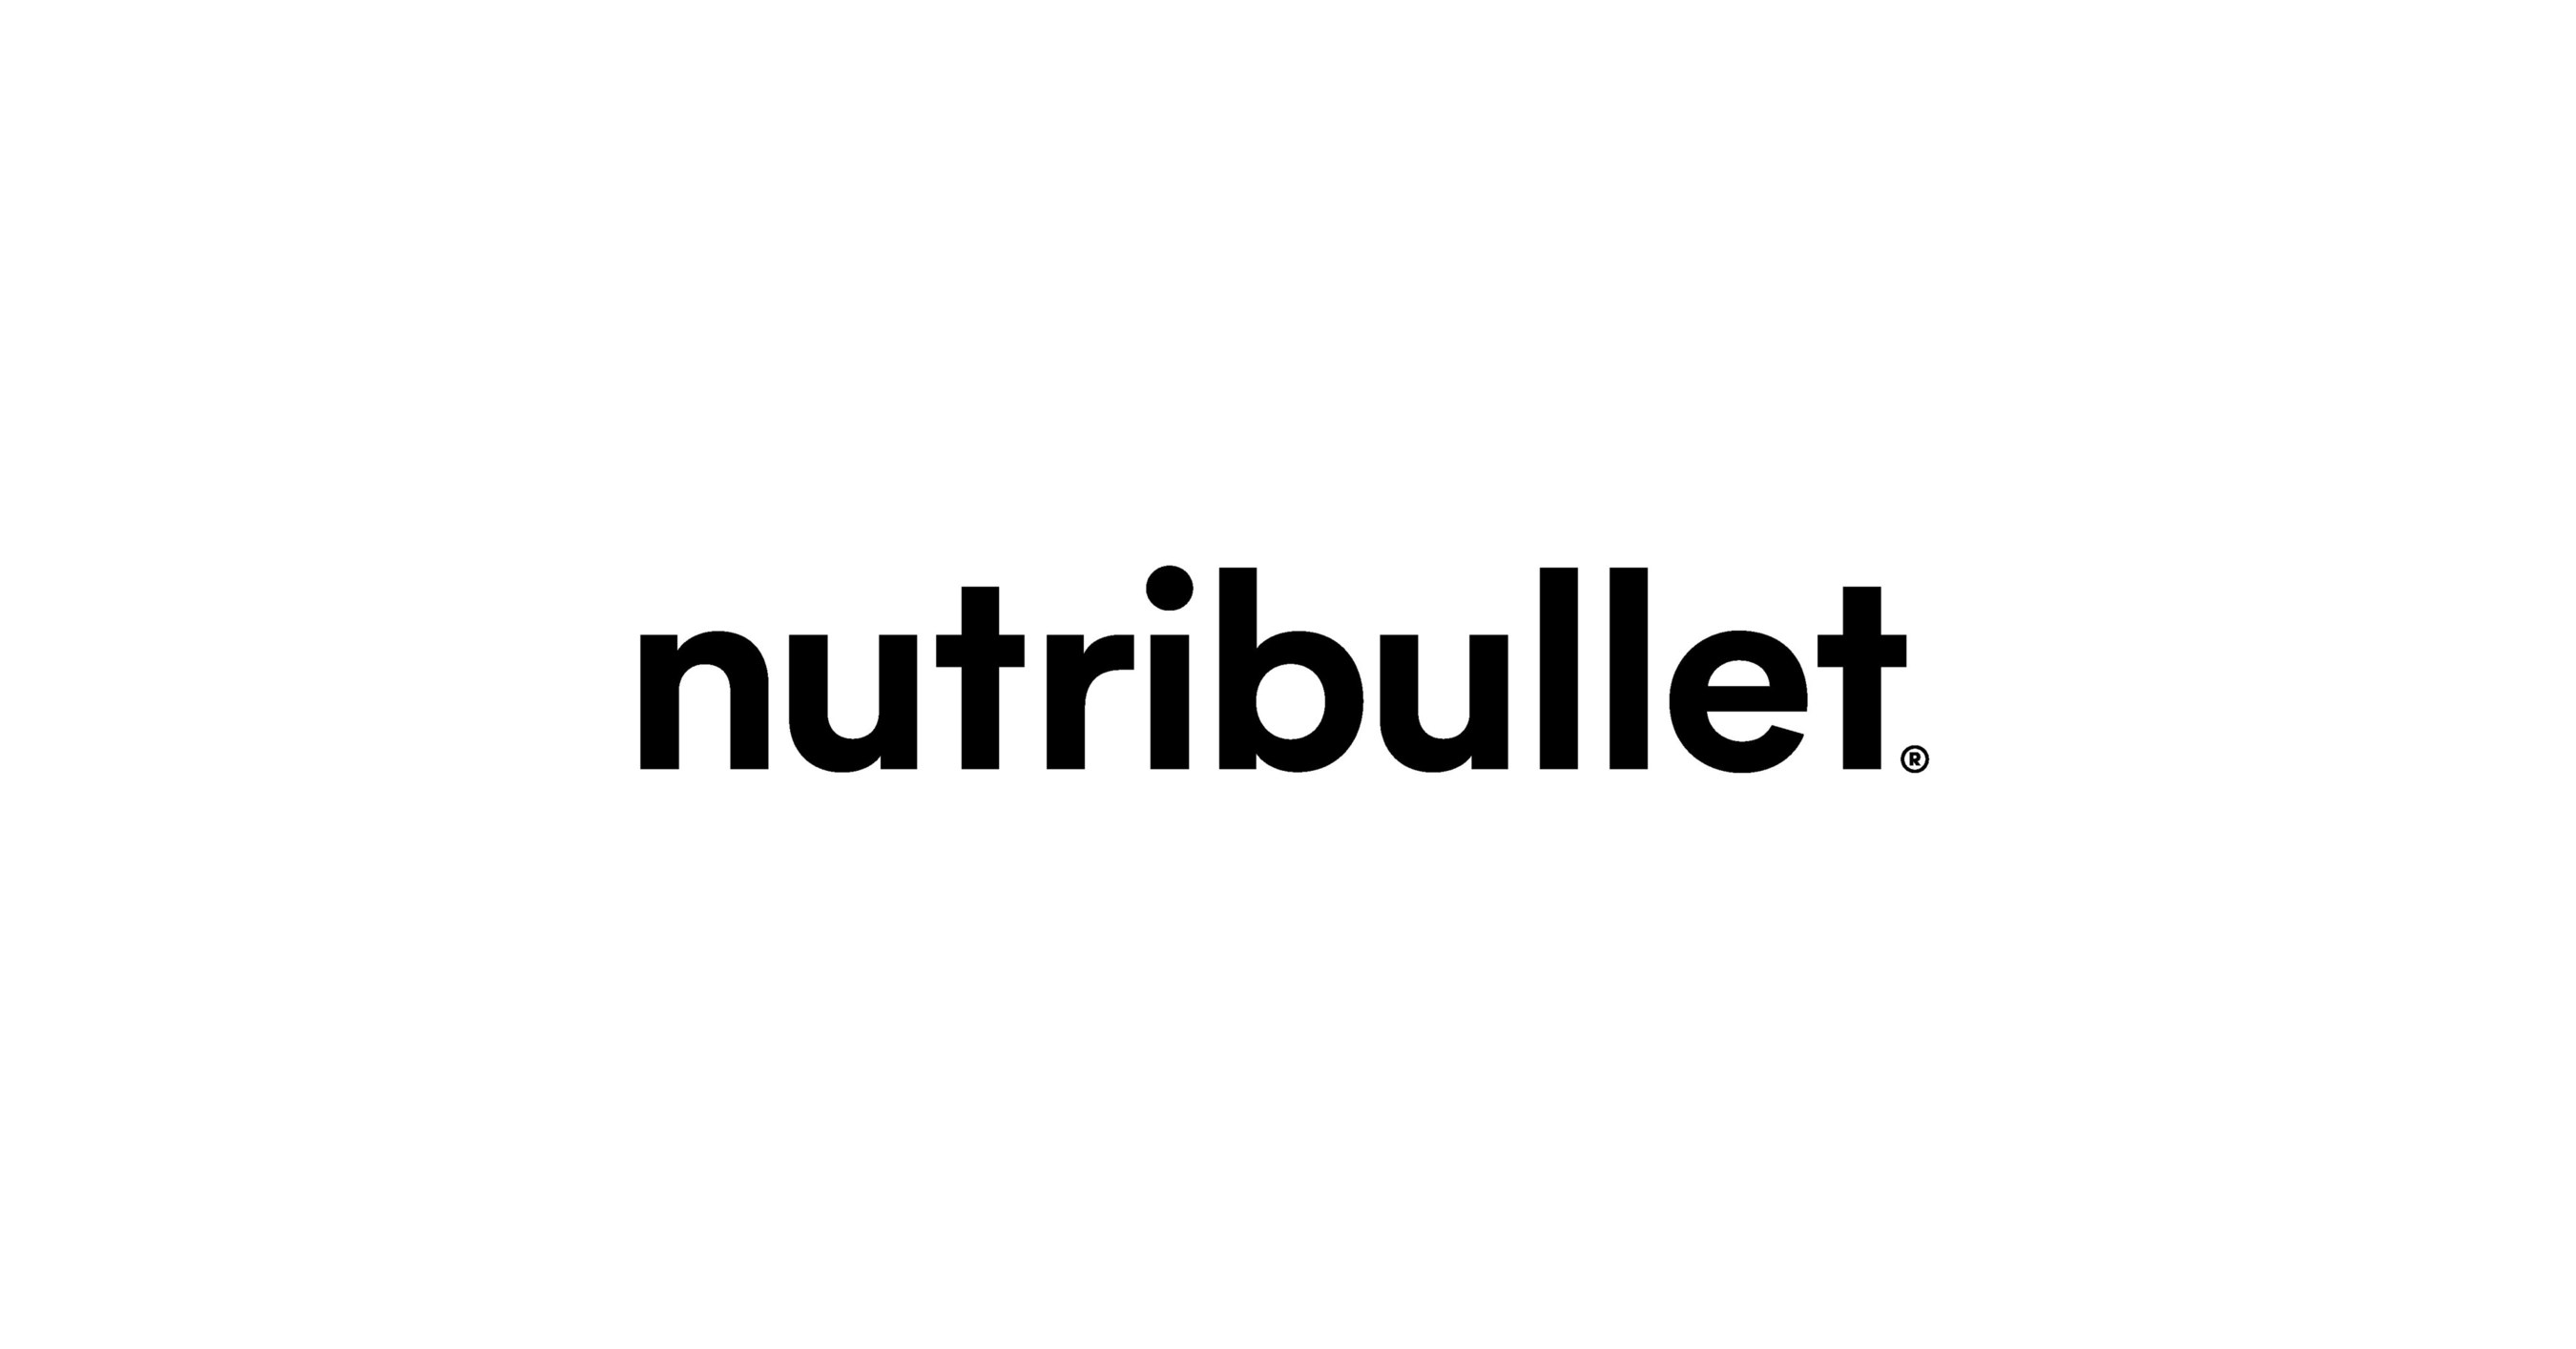 https://mma.prnewswire.com/media/1172835/NutriBullet_Logo.jpg?p=facebook